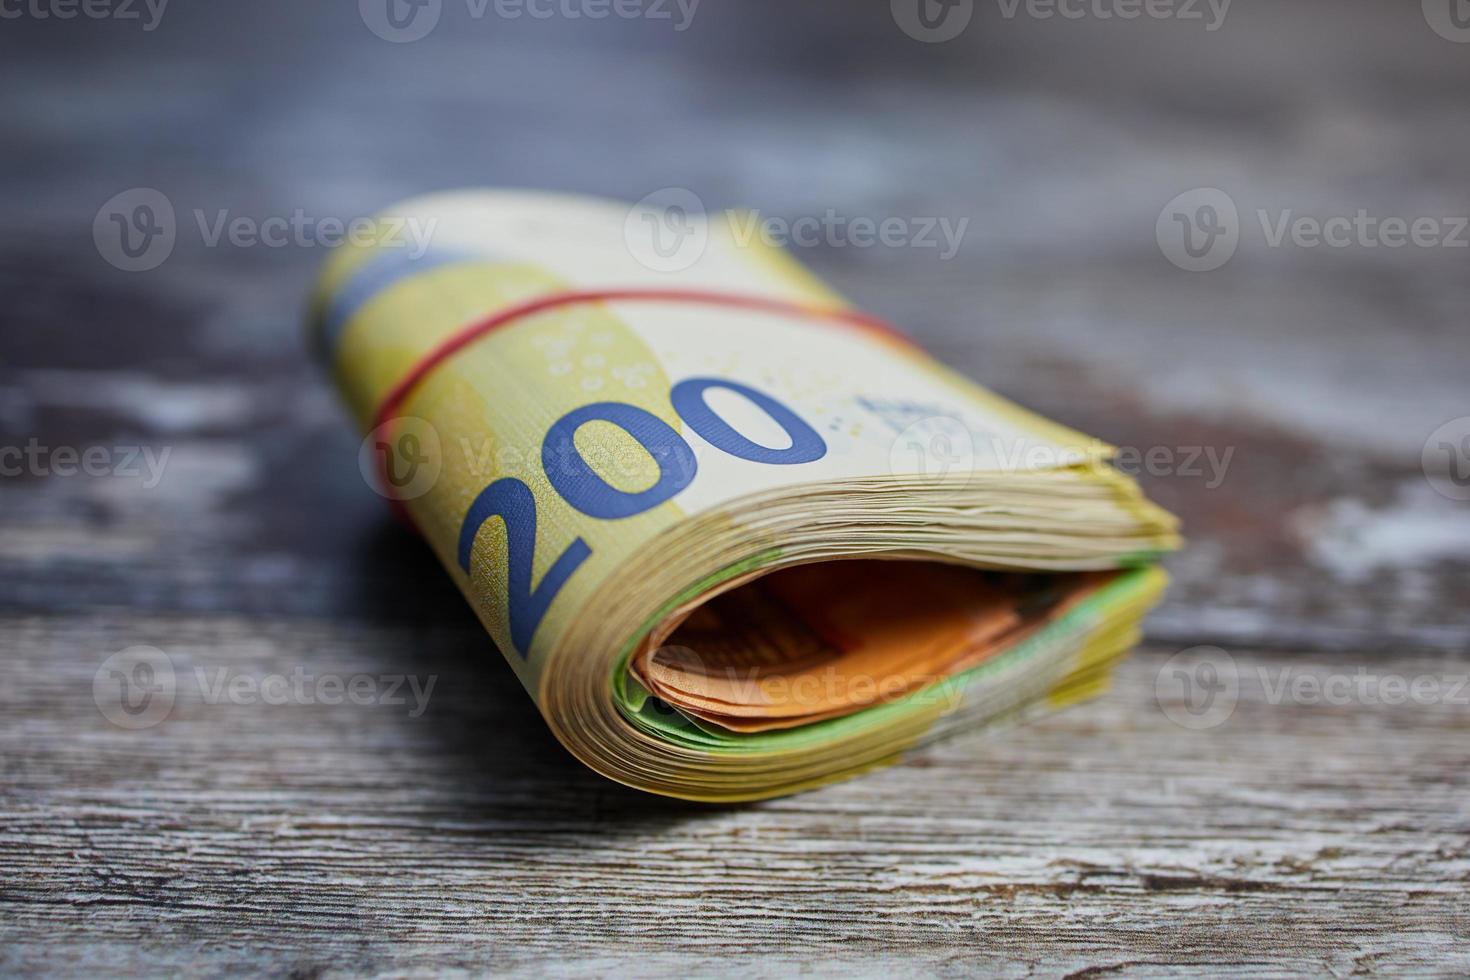 makro färgfoto av tvåhundra eurosedlar mot träyta, bundna med ett hushållsgummi foto